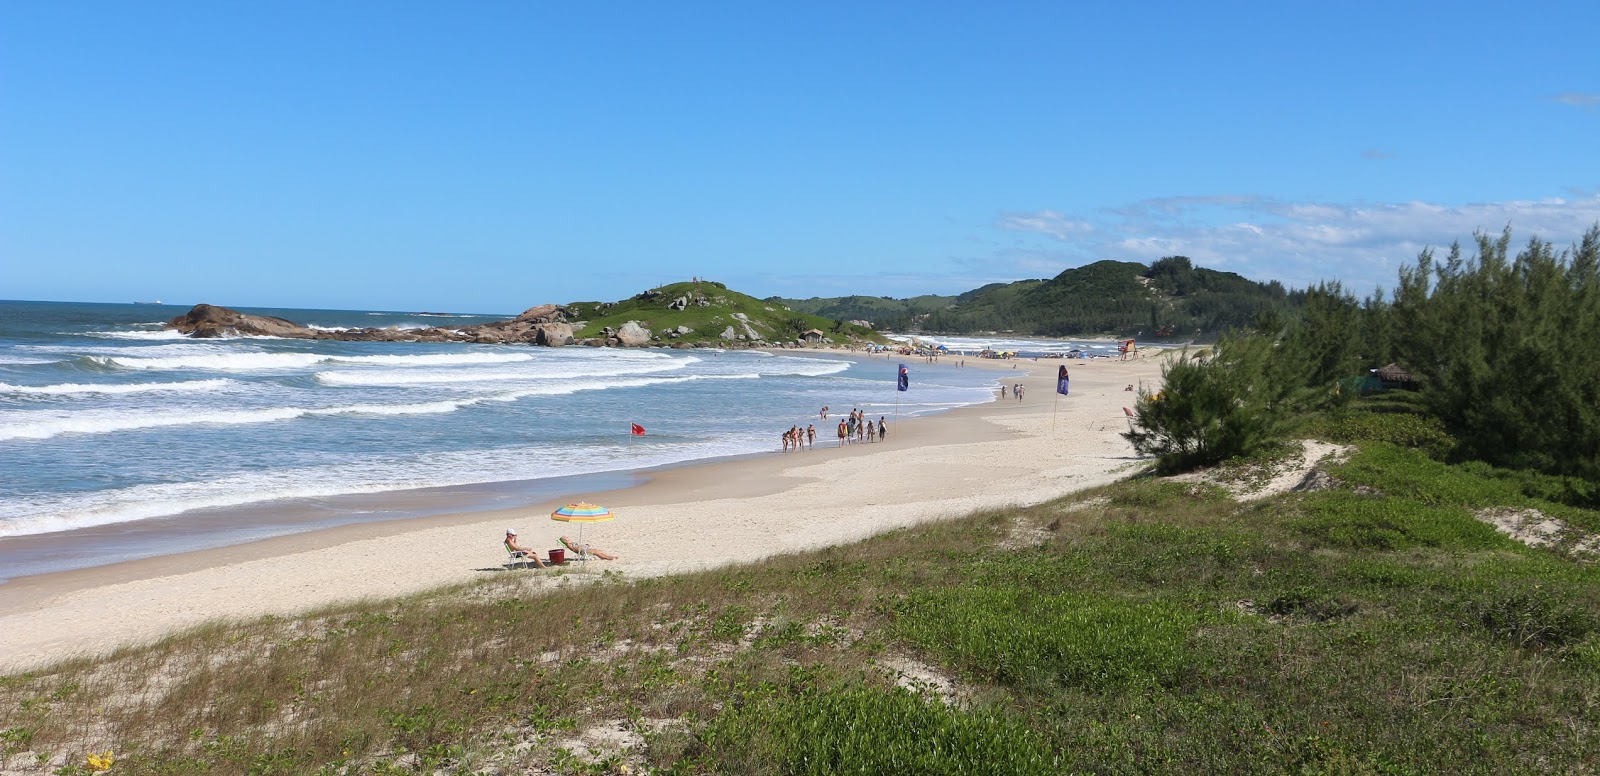 Praia da Ferrugem'in fotoğrafı parlak ince kum yüzey ile